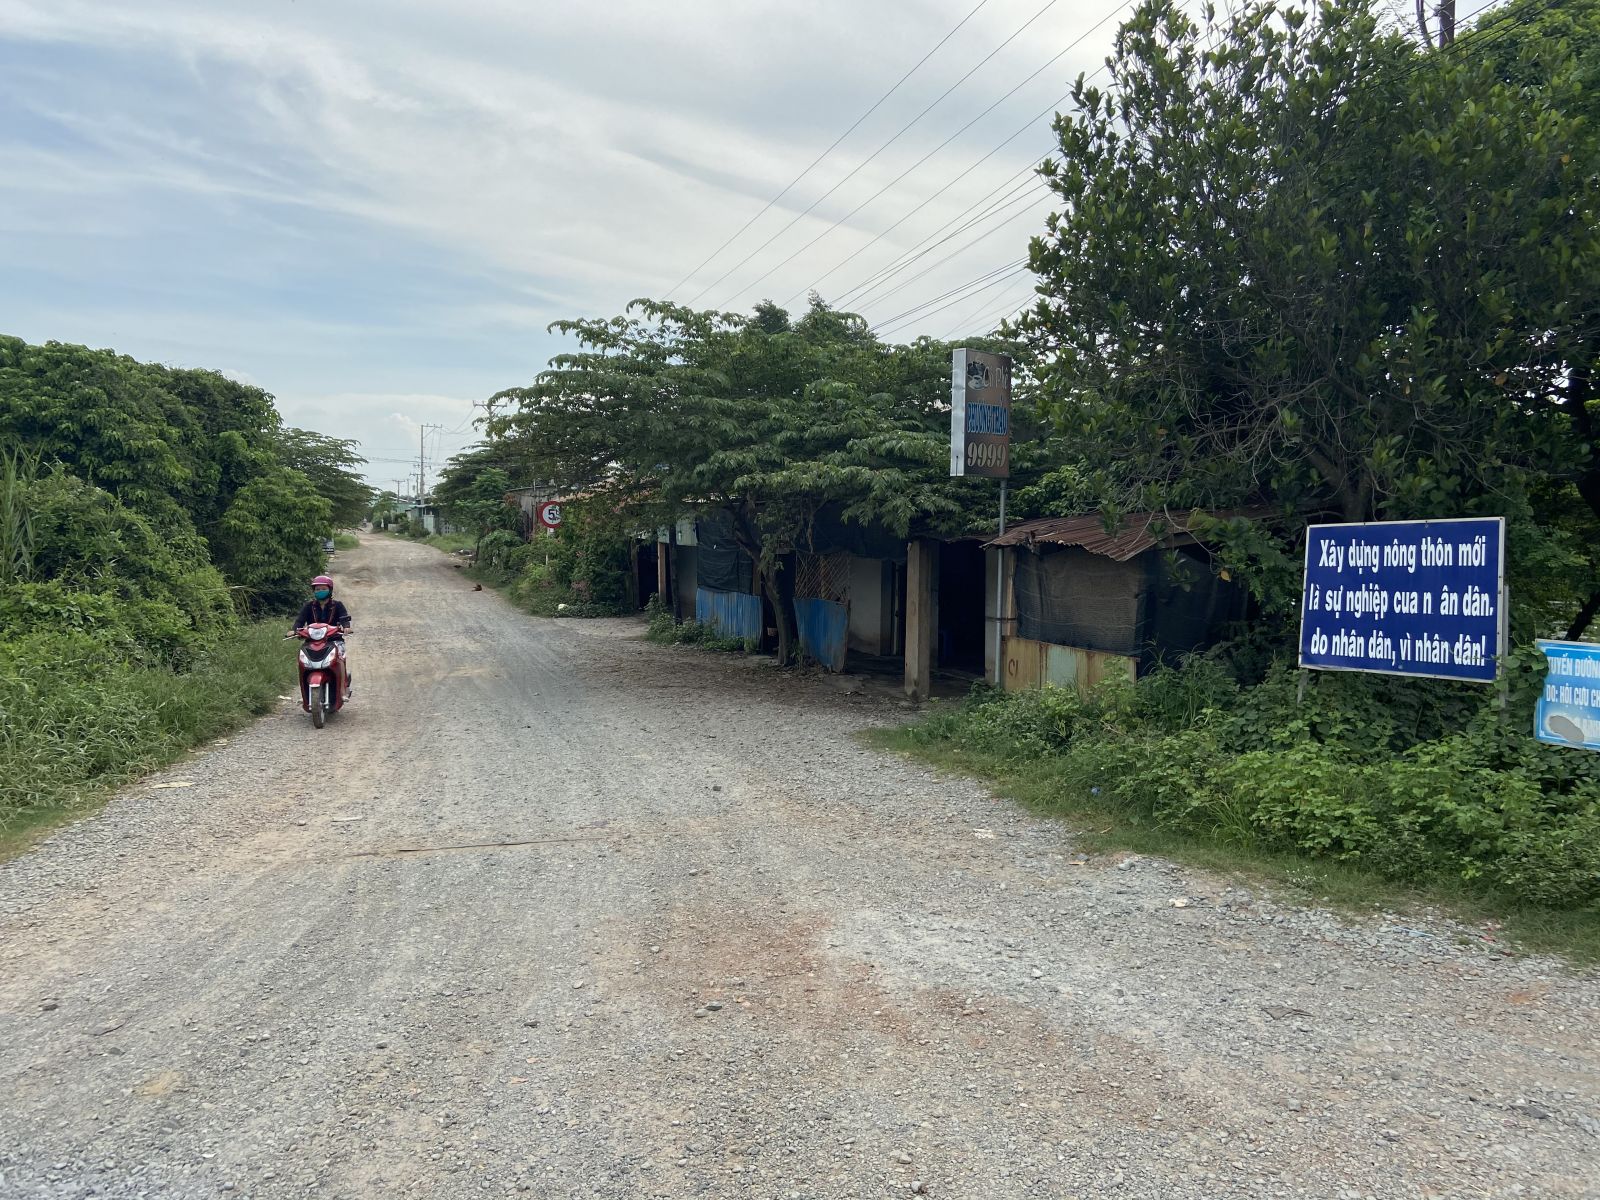 Chủ trương mở rộng, láng nhựa tuyến đường Nguyễn Văn Quá nhưng không bồi thường giải phóng mặt bằng, gây thiệt hại lợi ích cho gần 50 hộ dân ấp Bình An A, xã Lợi Bình Nhơn